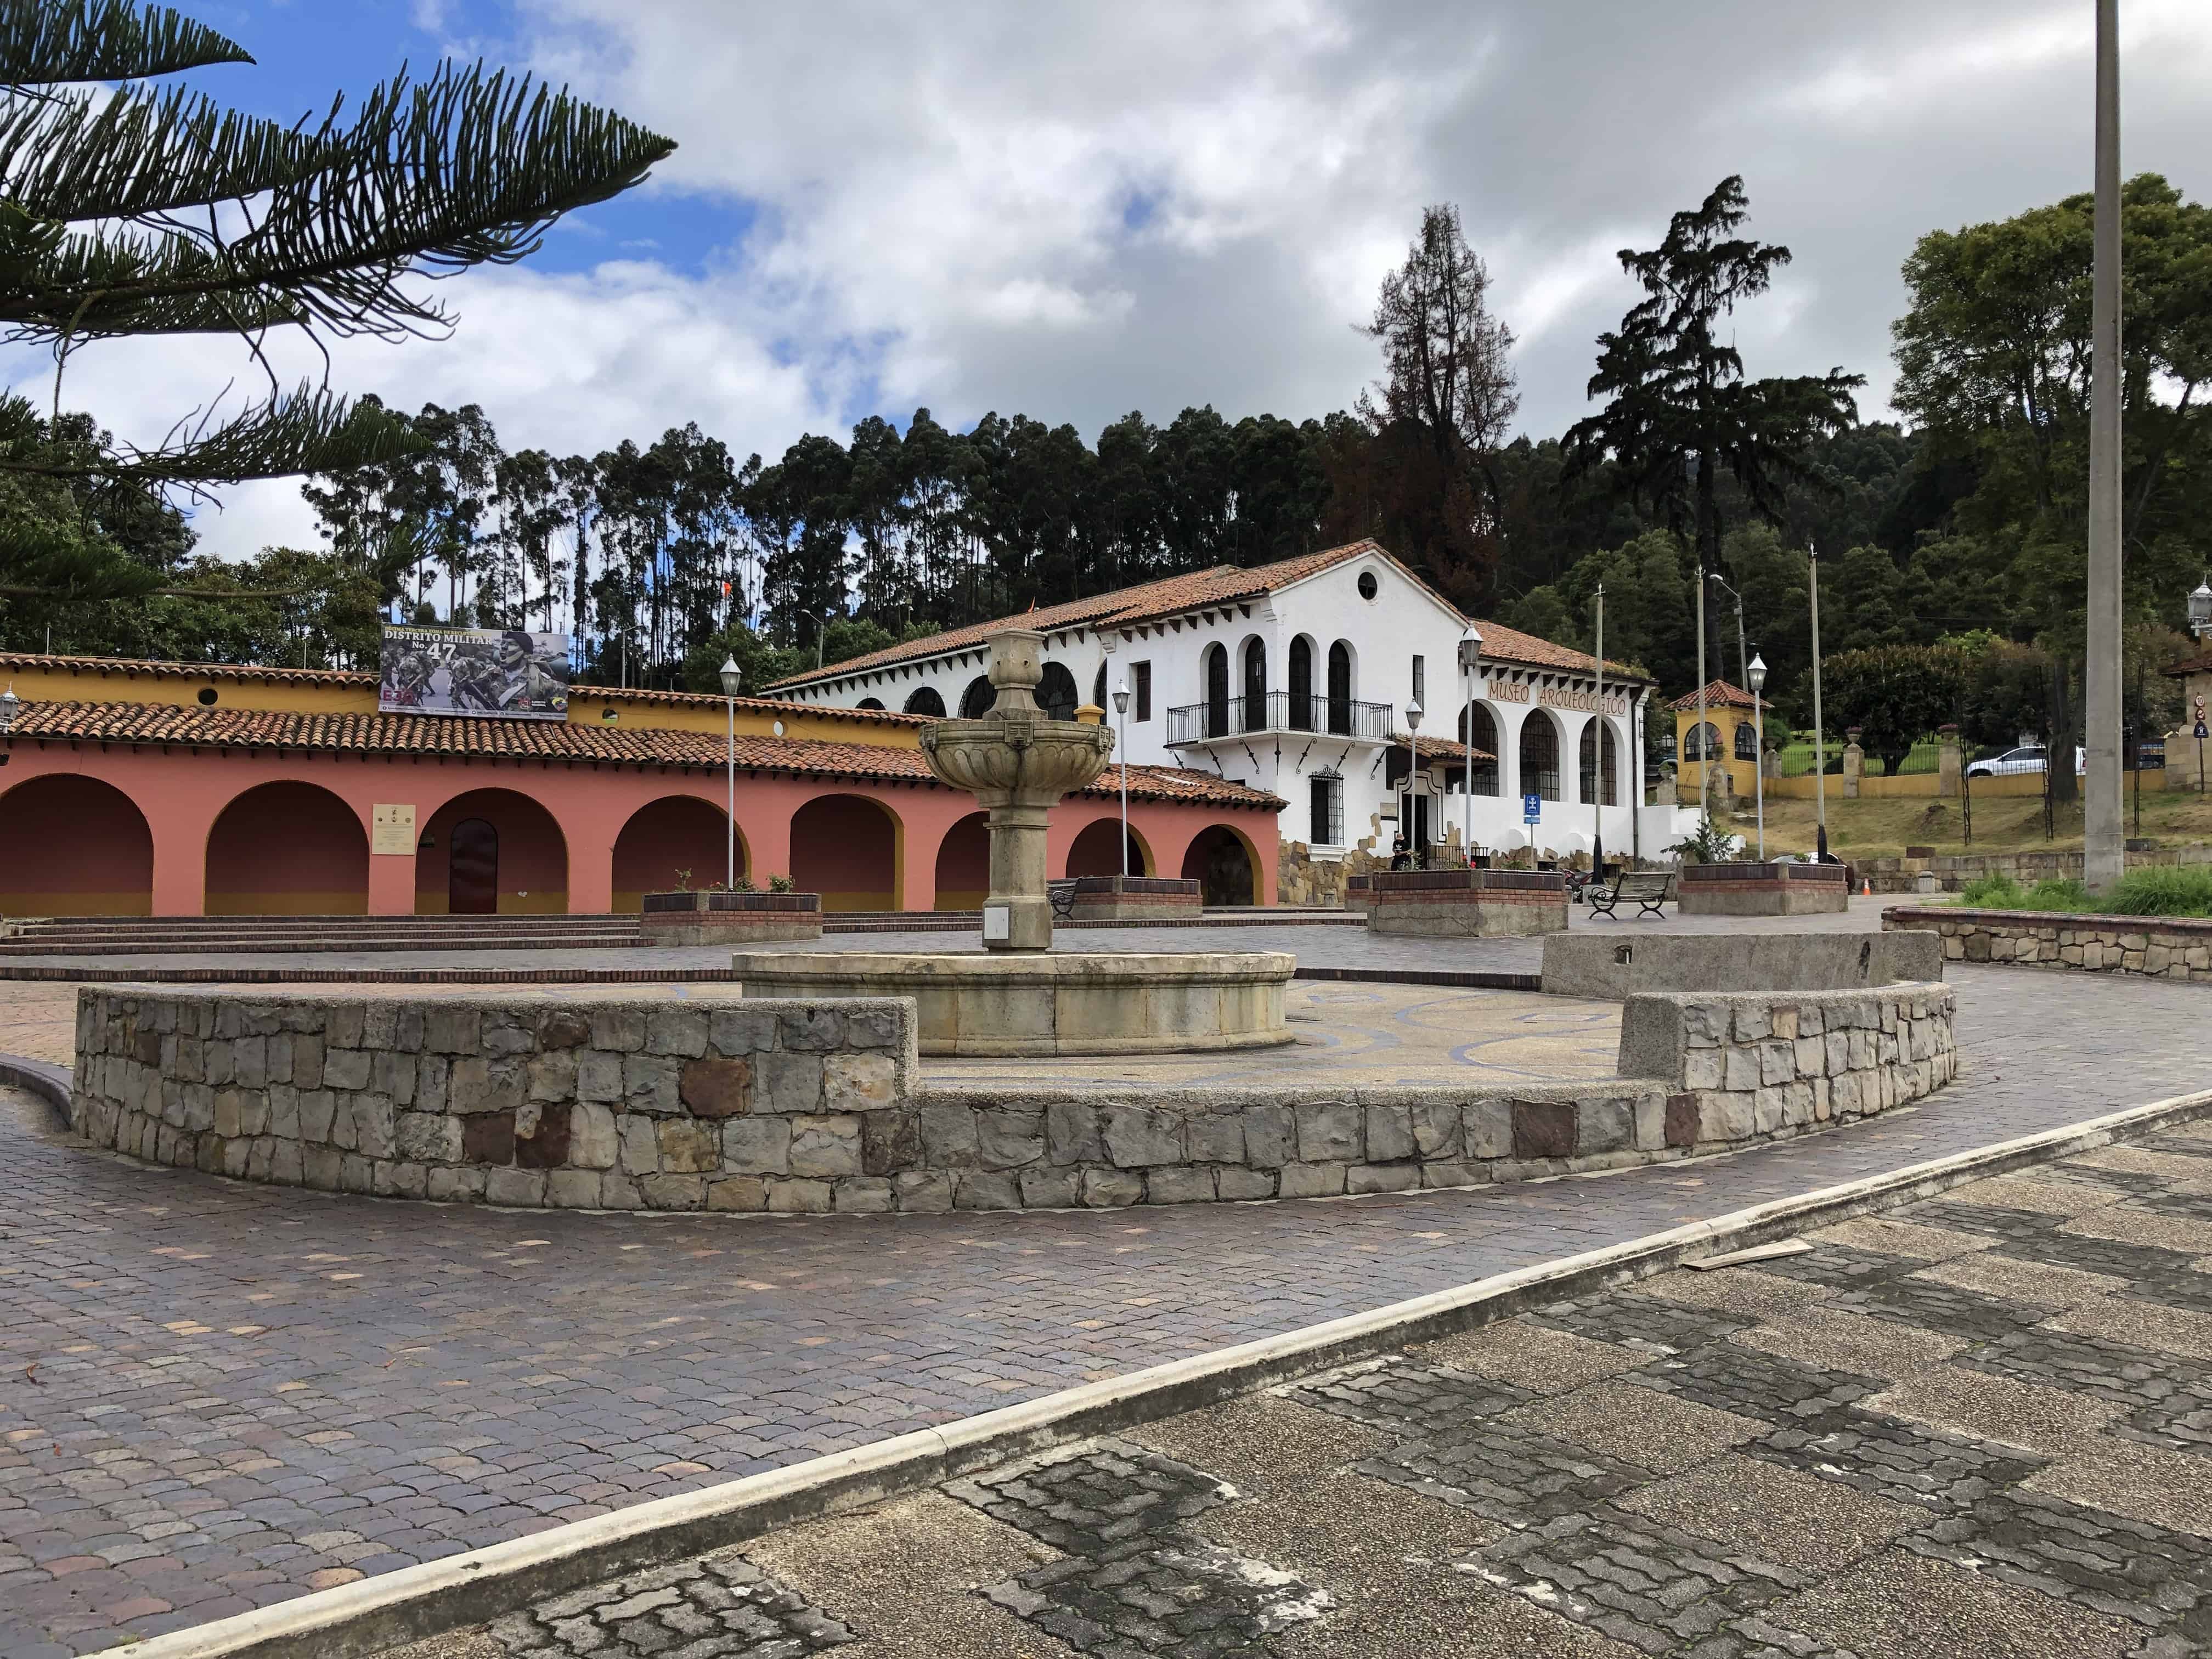 Parque Villaveces in Zipaquirá, Cundinamarca, Colombia